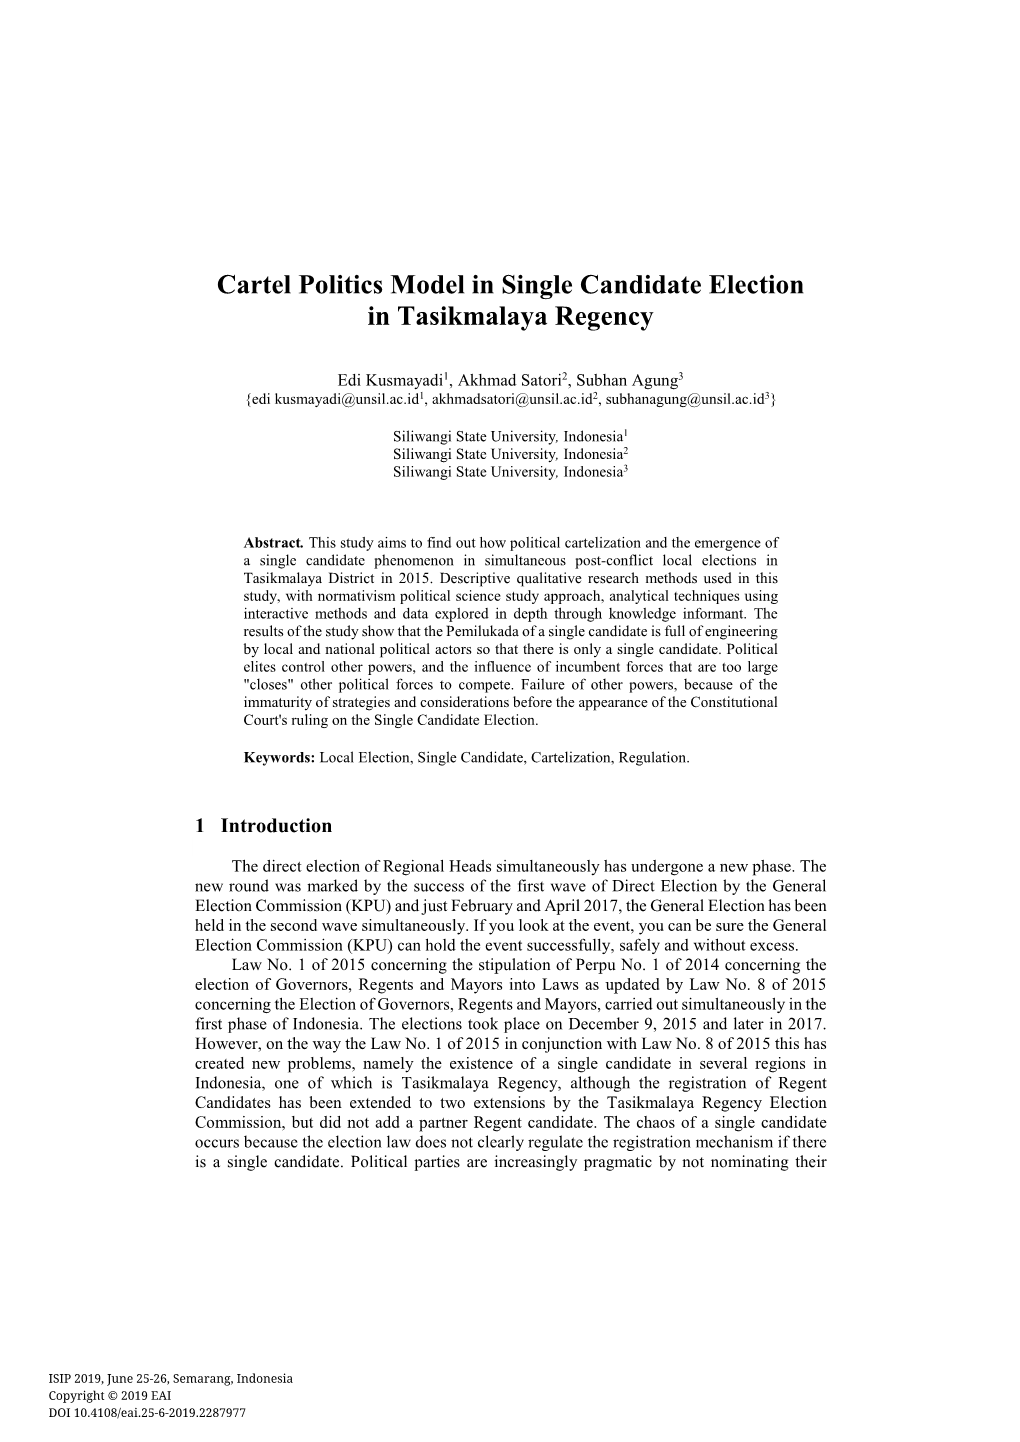 Cartel Politics Model in Single Candidate Election in Tasikmalaya Regency